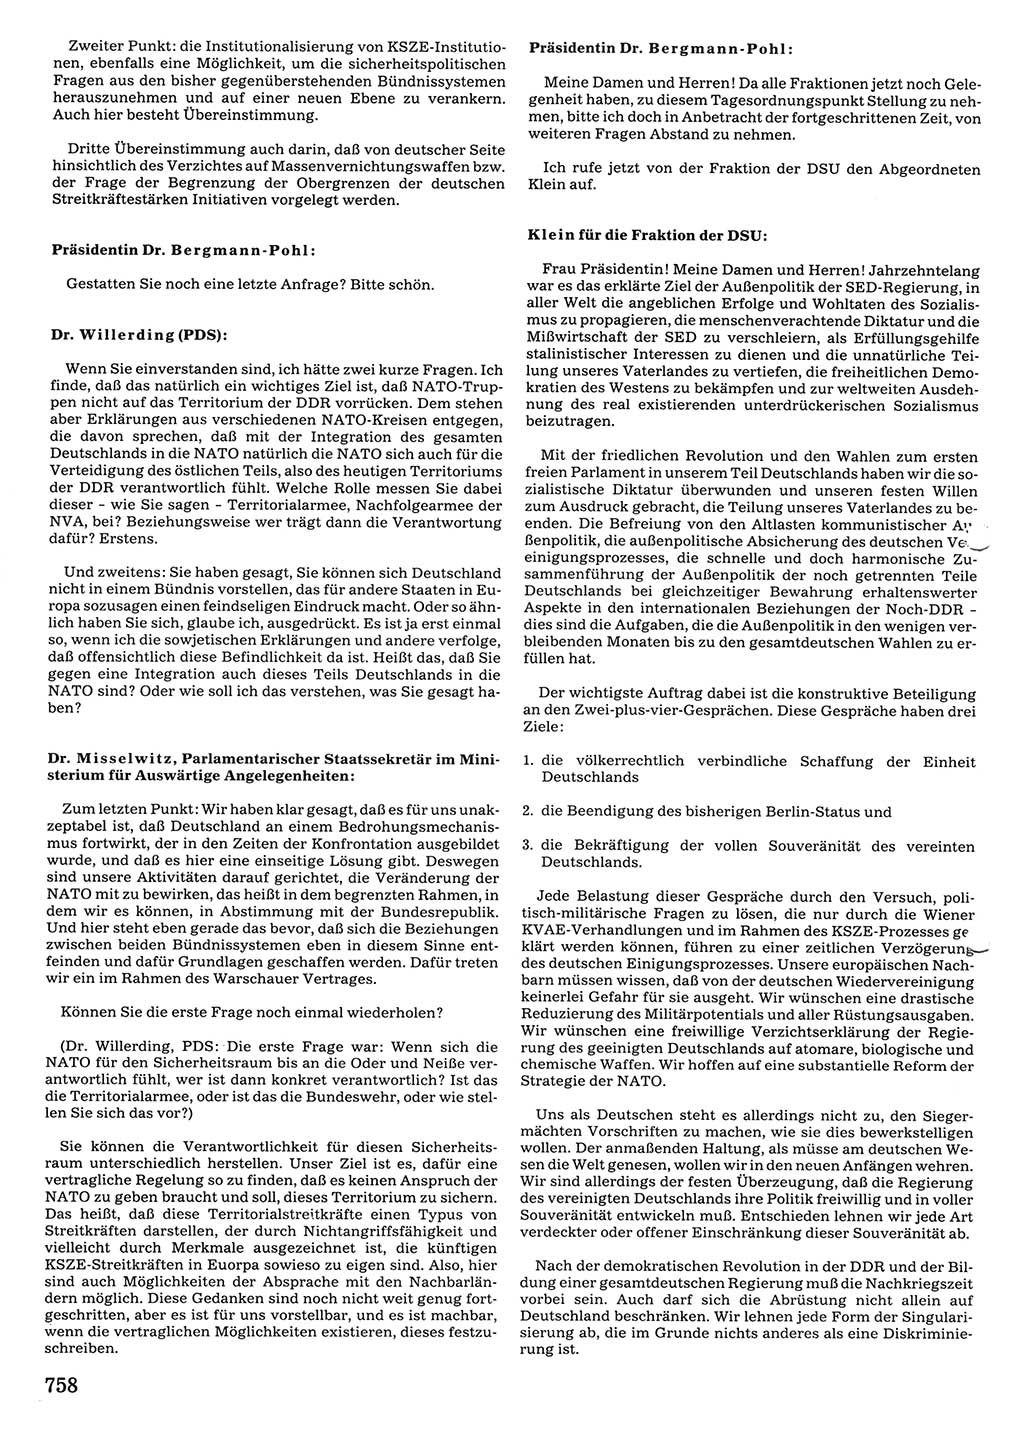 Tagungen der Volkskammer (VK) der Deutschen Demokratischen Republik (DDR), 10. Wahlperiode 1990, Seite 758 (VK. DDR 10. WP. 1990, Prot. Tg. 1-38, 5.4.-2.10.1990, S. 758)